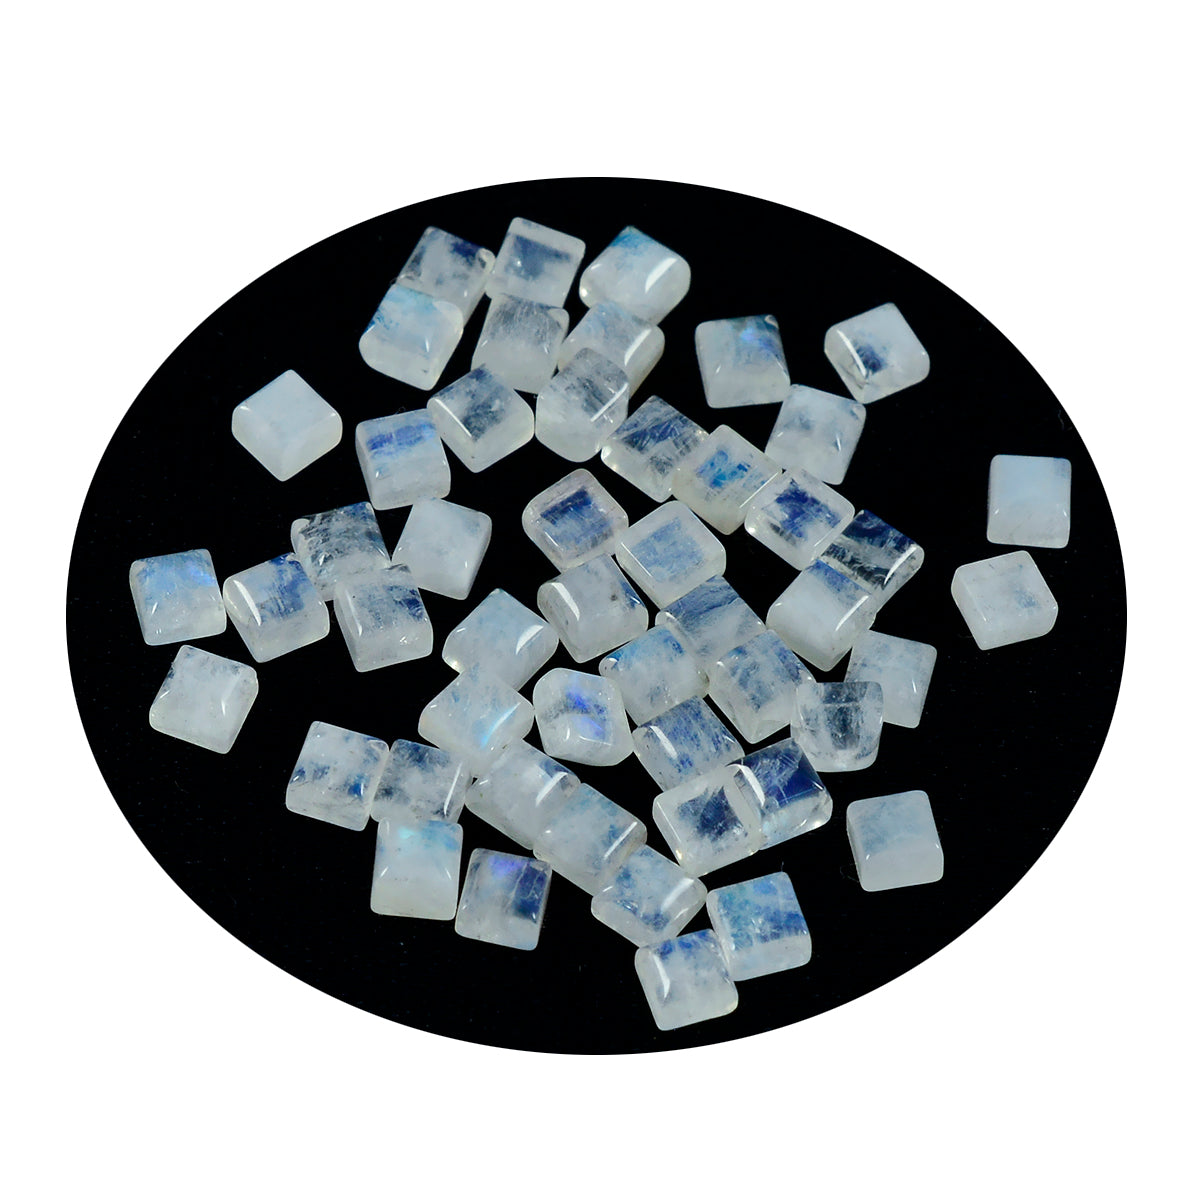 Riyogems 1 Stück weißer Regenbogen-Mondstein-Cabochon, 4 x 4 mm, quadratische Form, schön aussehender Qualitäts-Edelstein